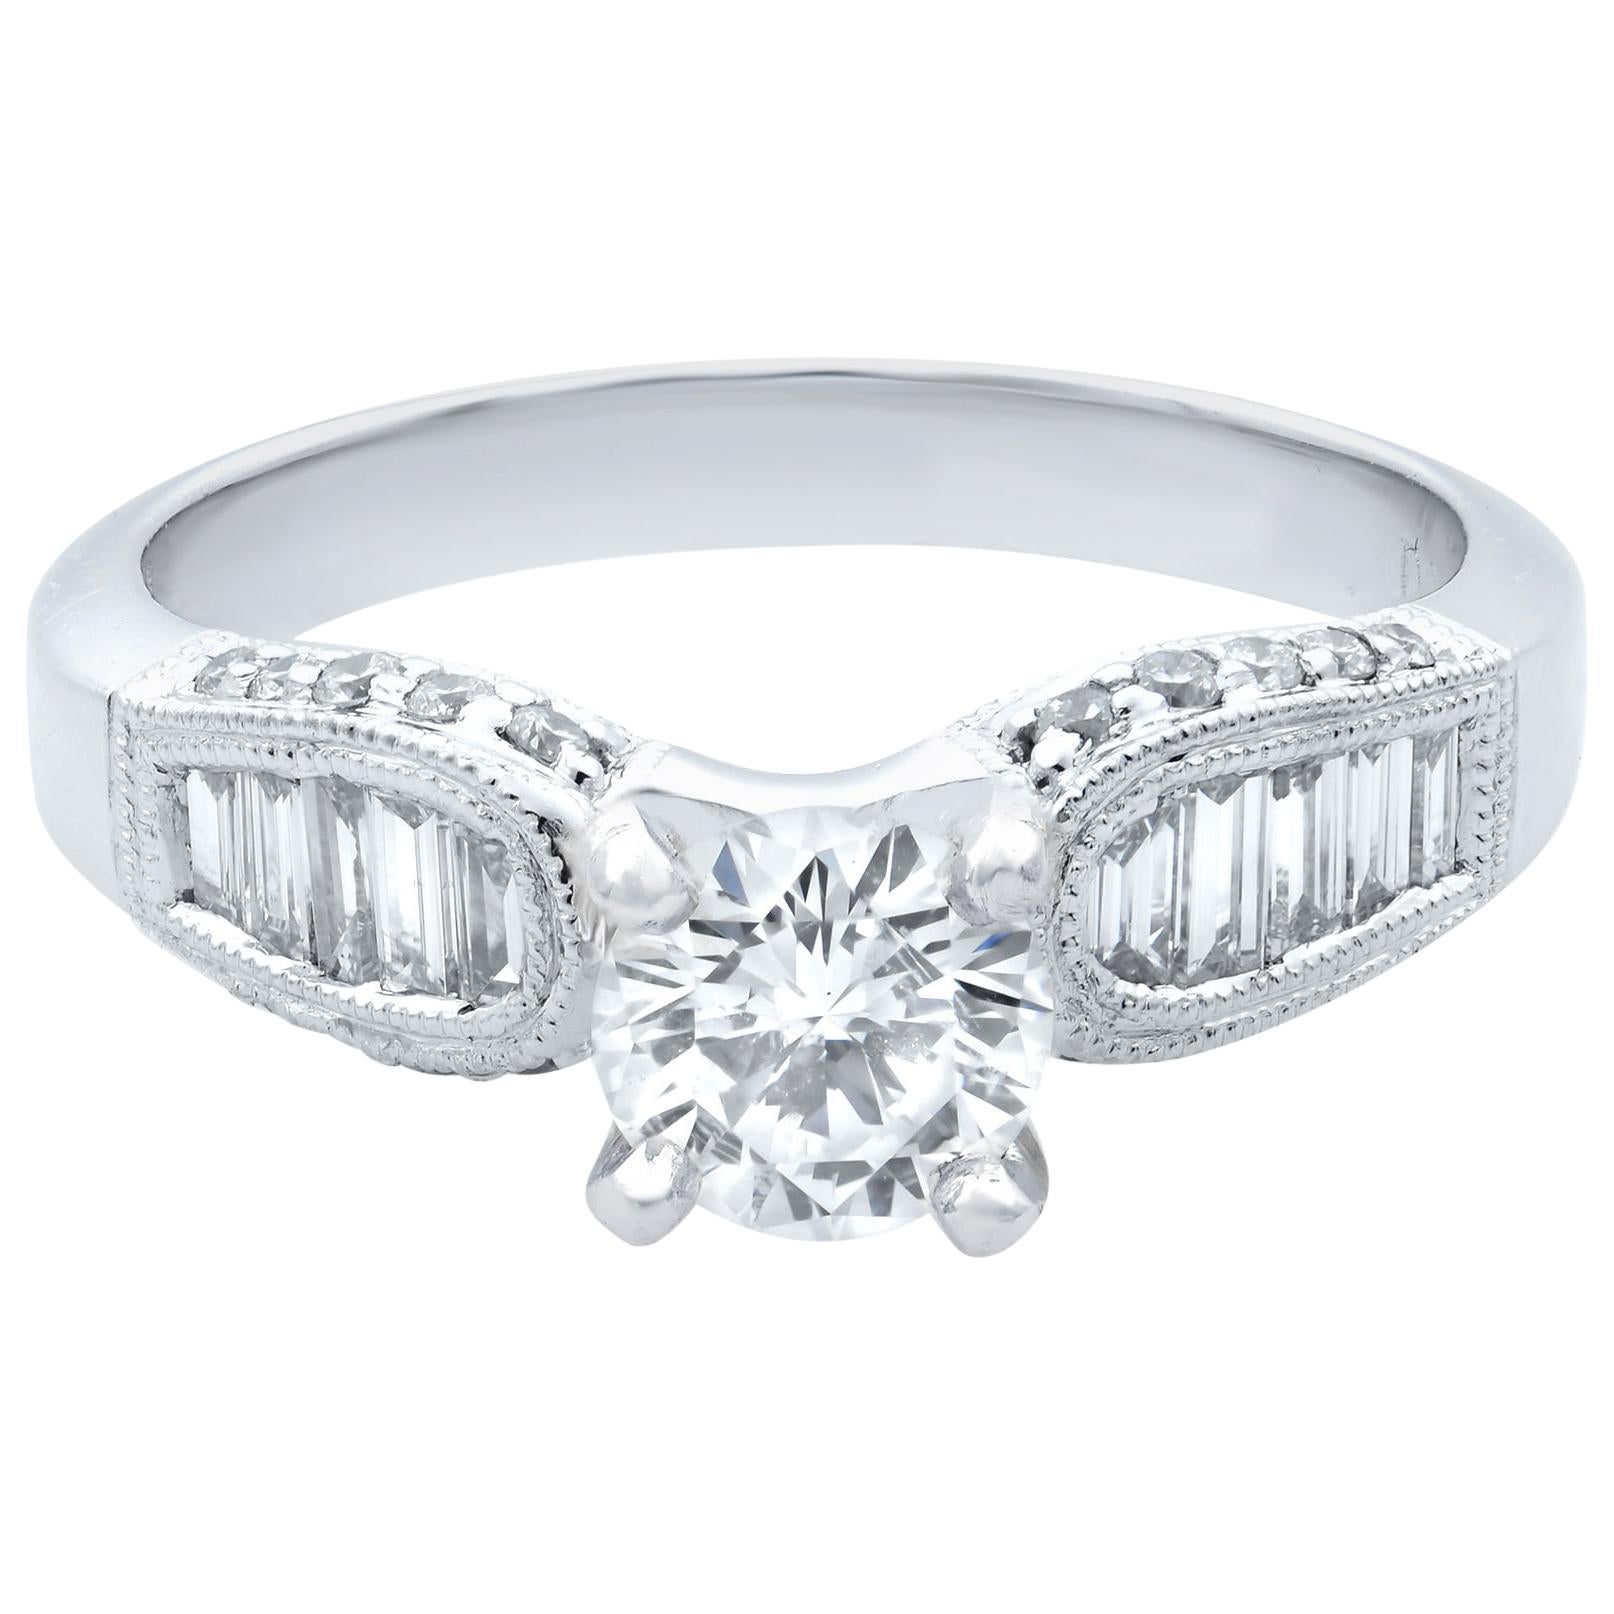 Rachel Koen Diamond Engagement Ring 18K White Gold 1.03Cttw For Sale